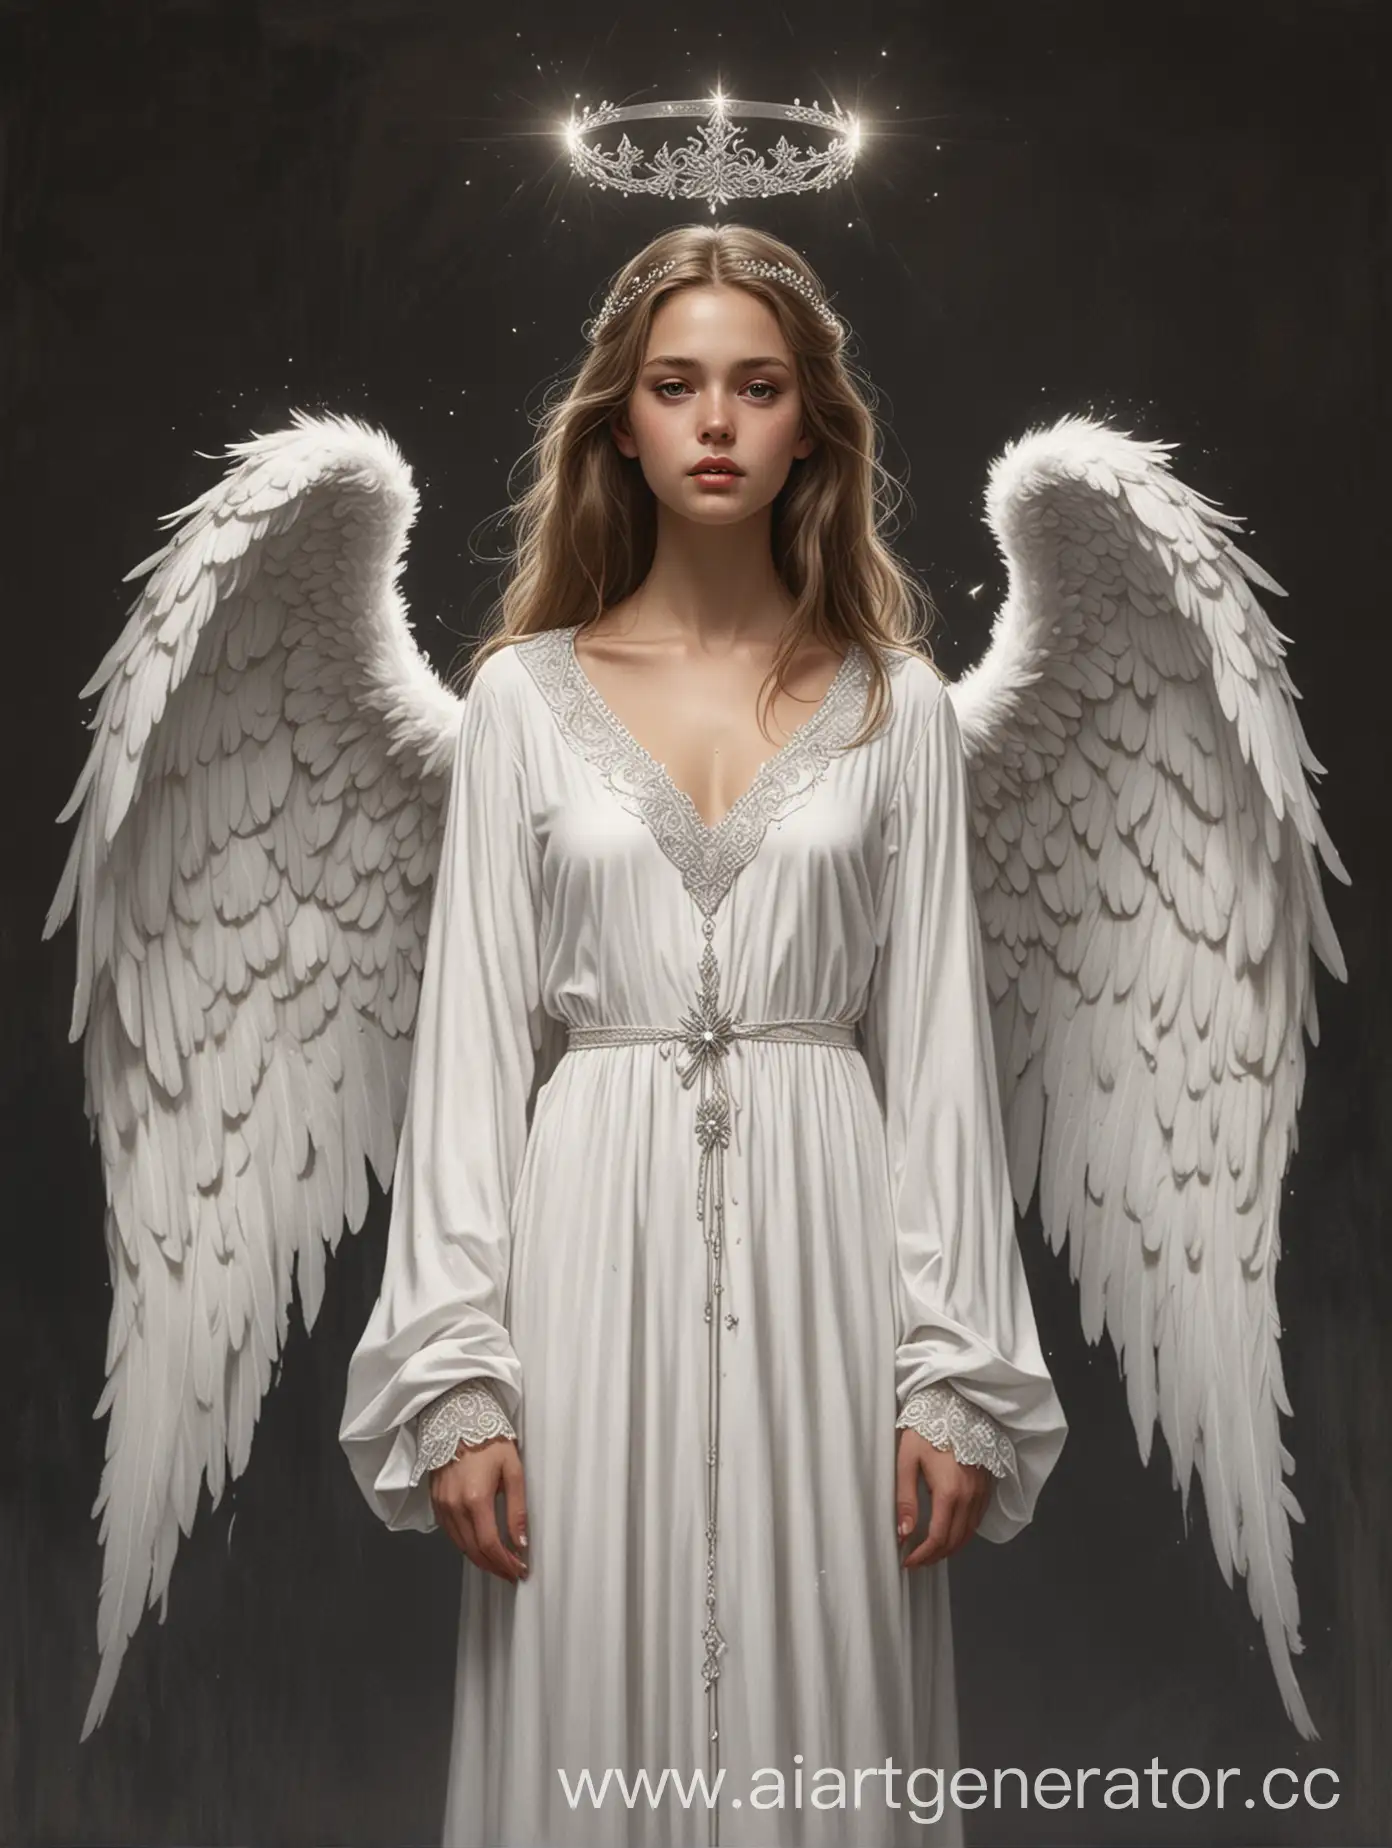 рисунок девушки в образе ангела. Одета в длинное белое платье-халат с длинным рукавом и v-образным вырезом. на голове ангельская корона в камнях, за спиной ангельские крылья во весь рост девушки